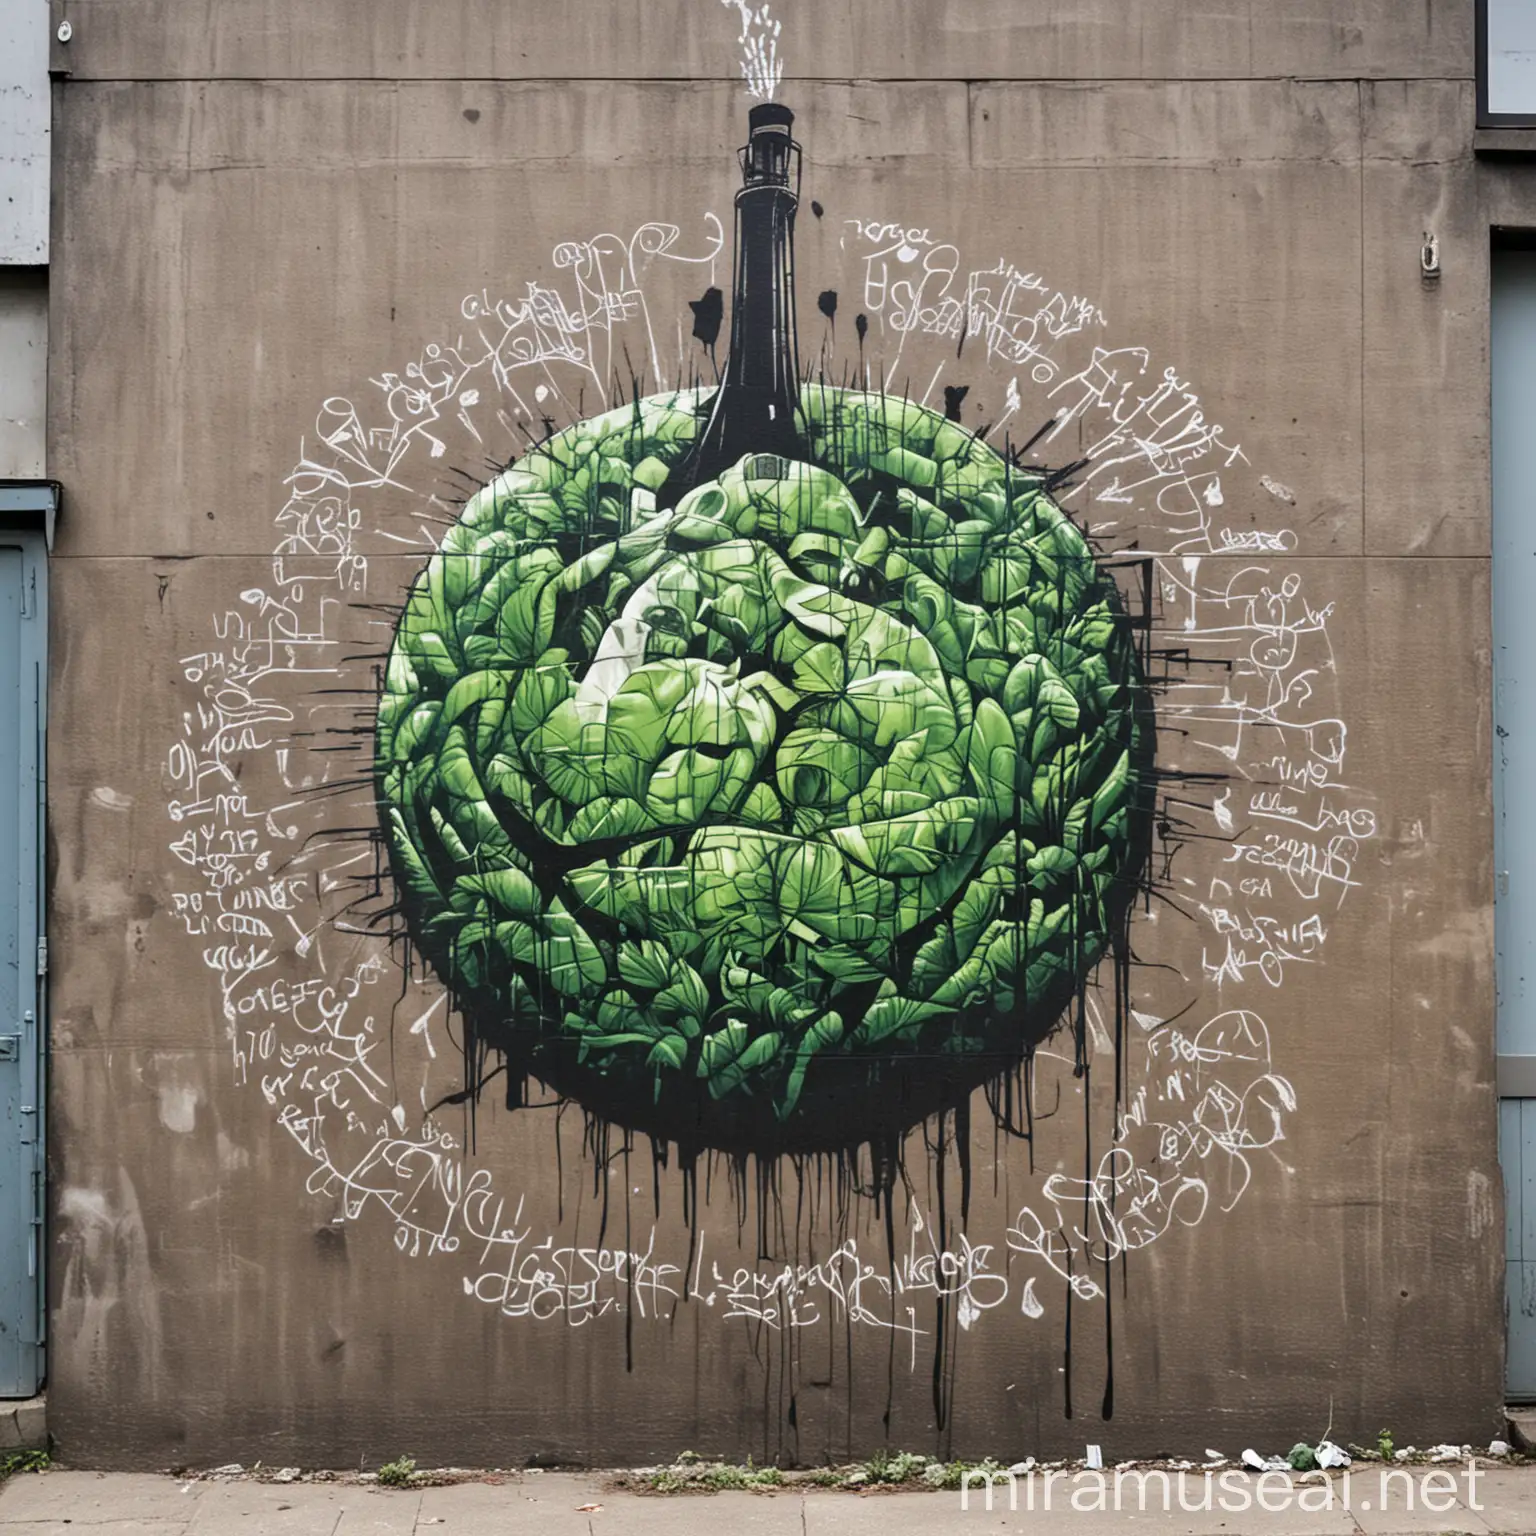 Graffiti art describing sustainability